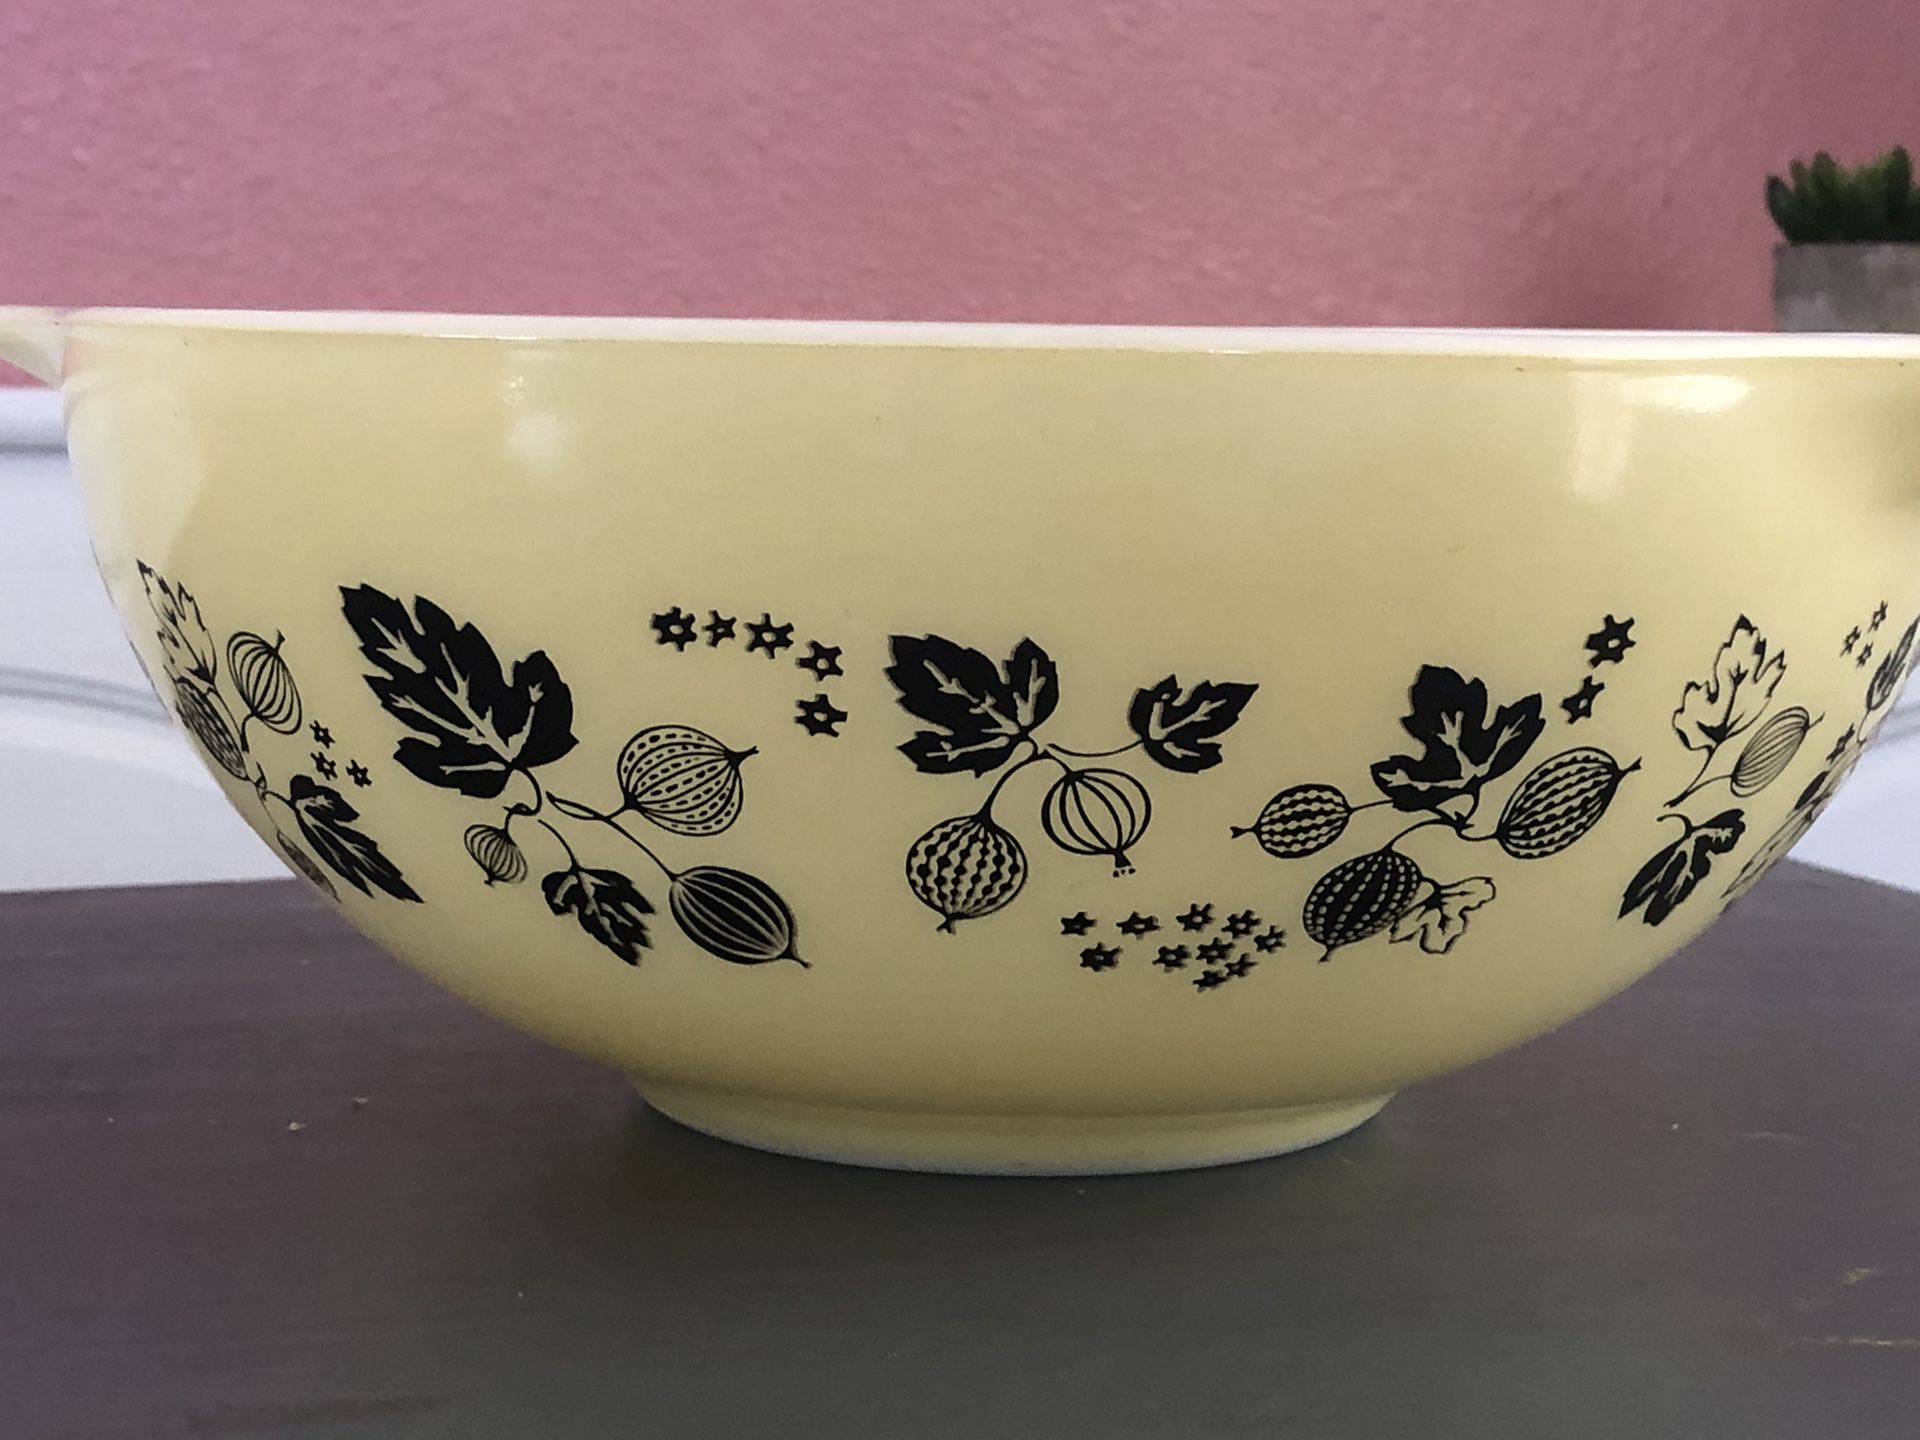 Vintage Pyrex bowl